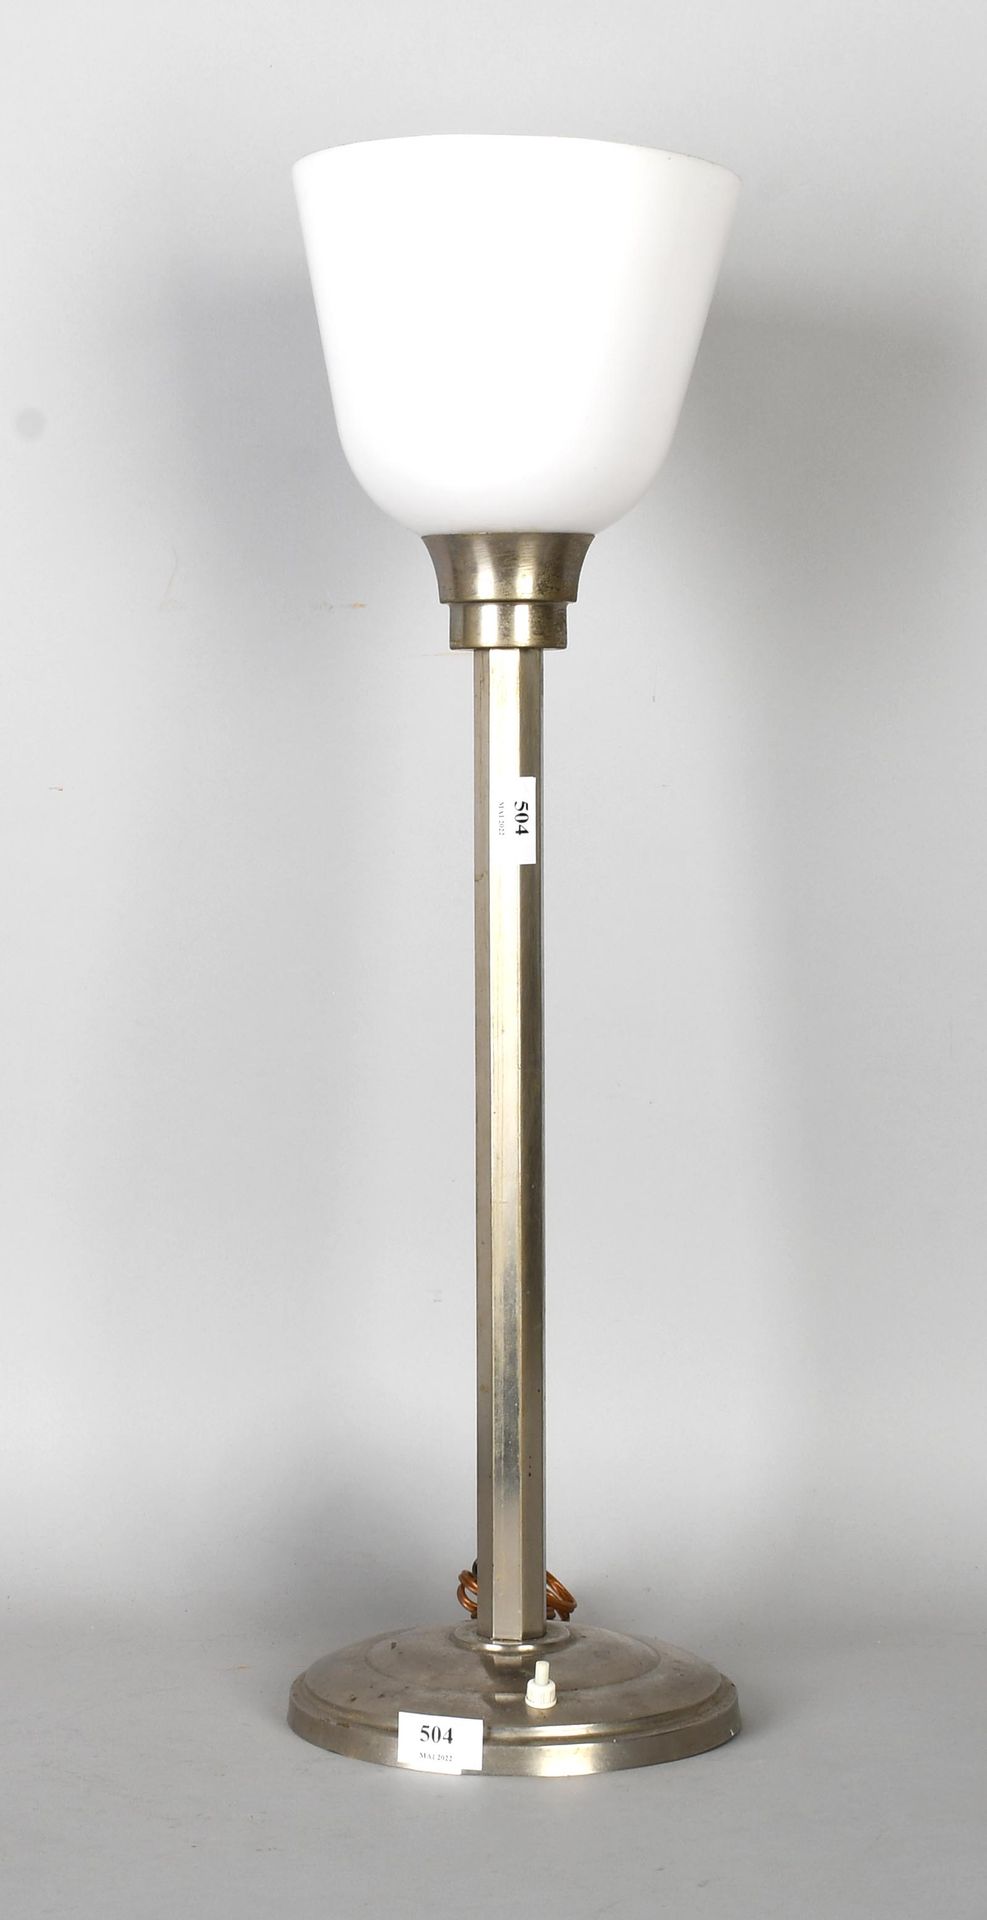 Null Erpe

Lámpara Art Decó en metal cromado, con un barril. Pantalla de cristal&hellip;